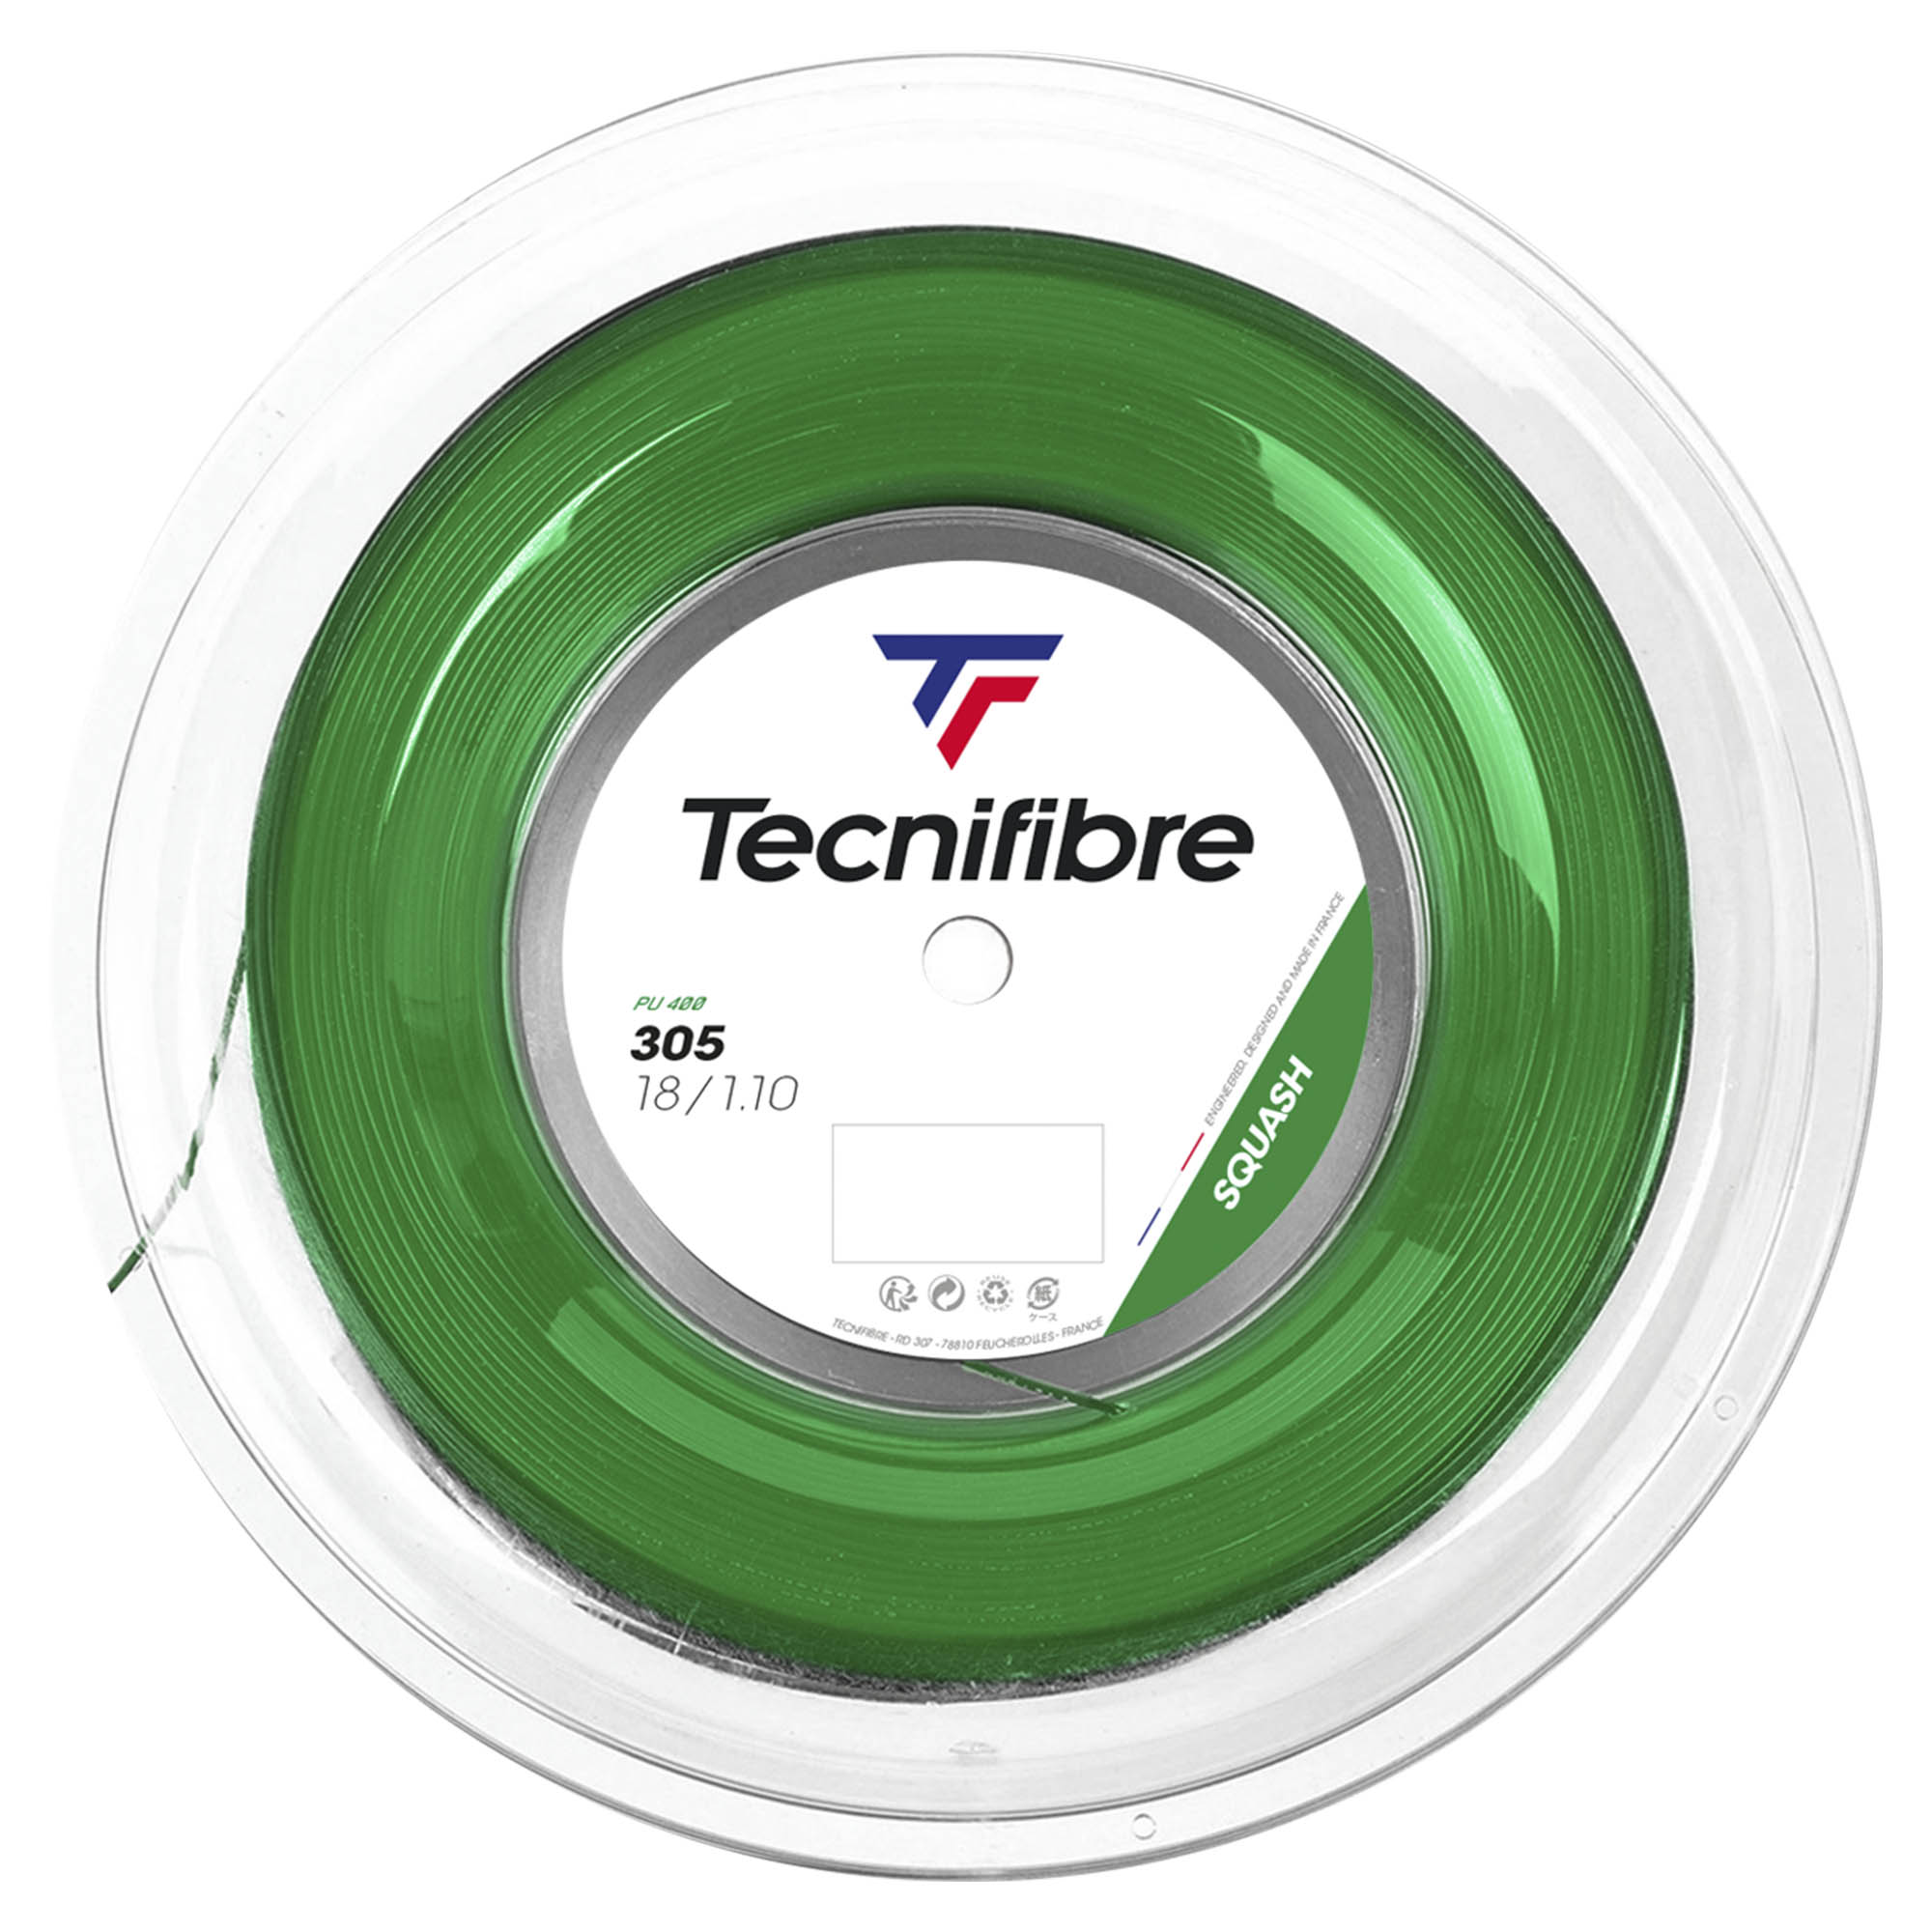 Tecnifibre 305 Premium Green Squash String - 200m Reel